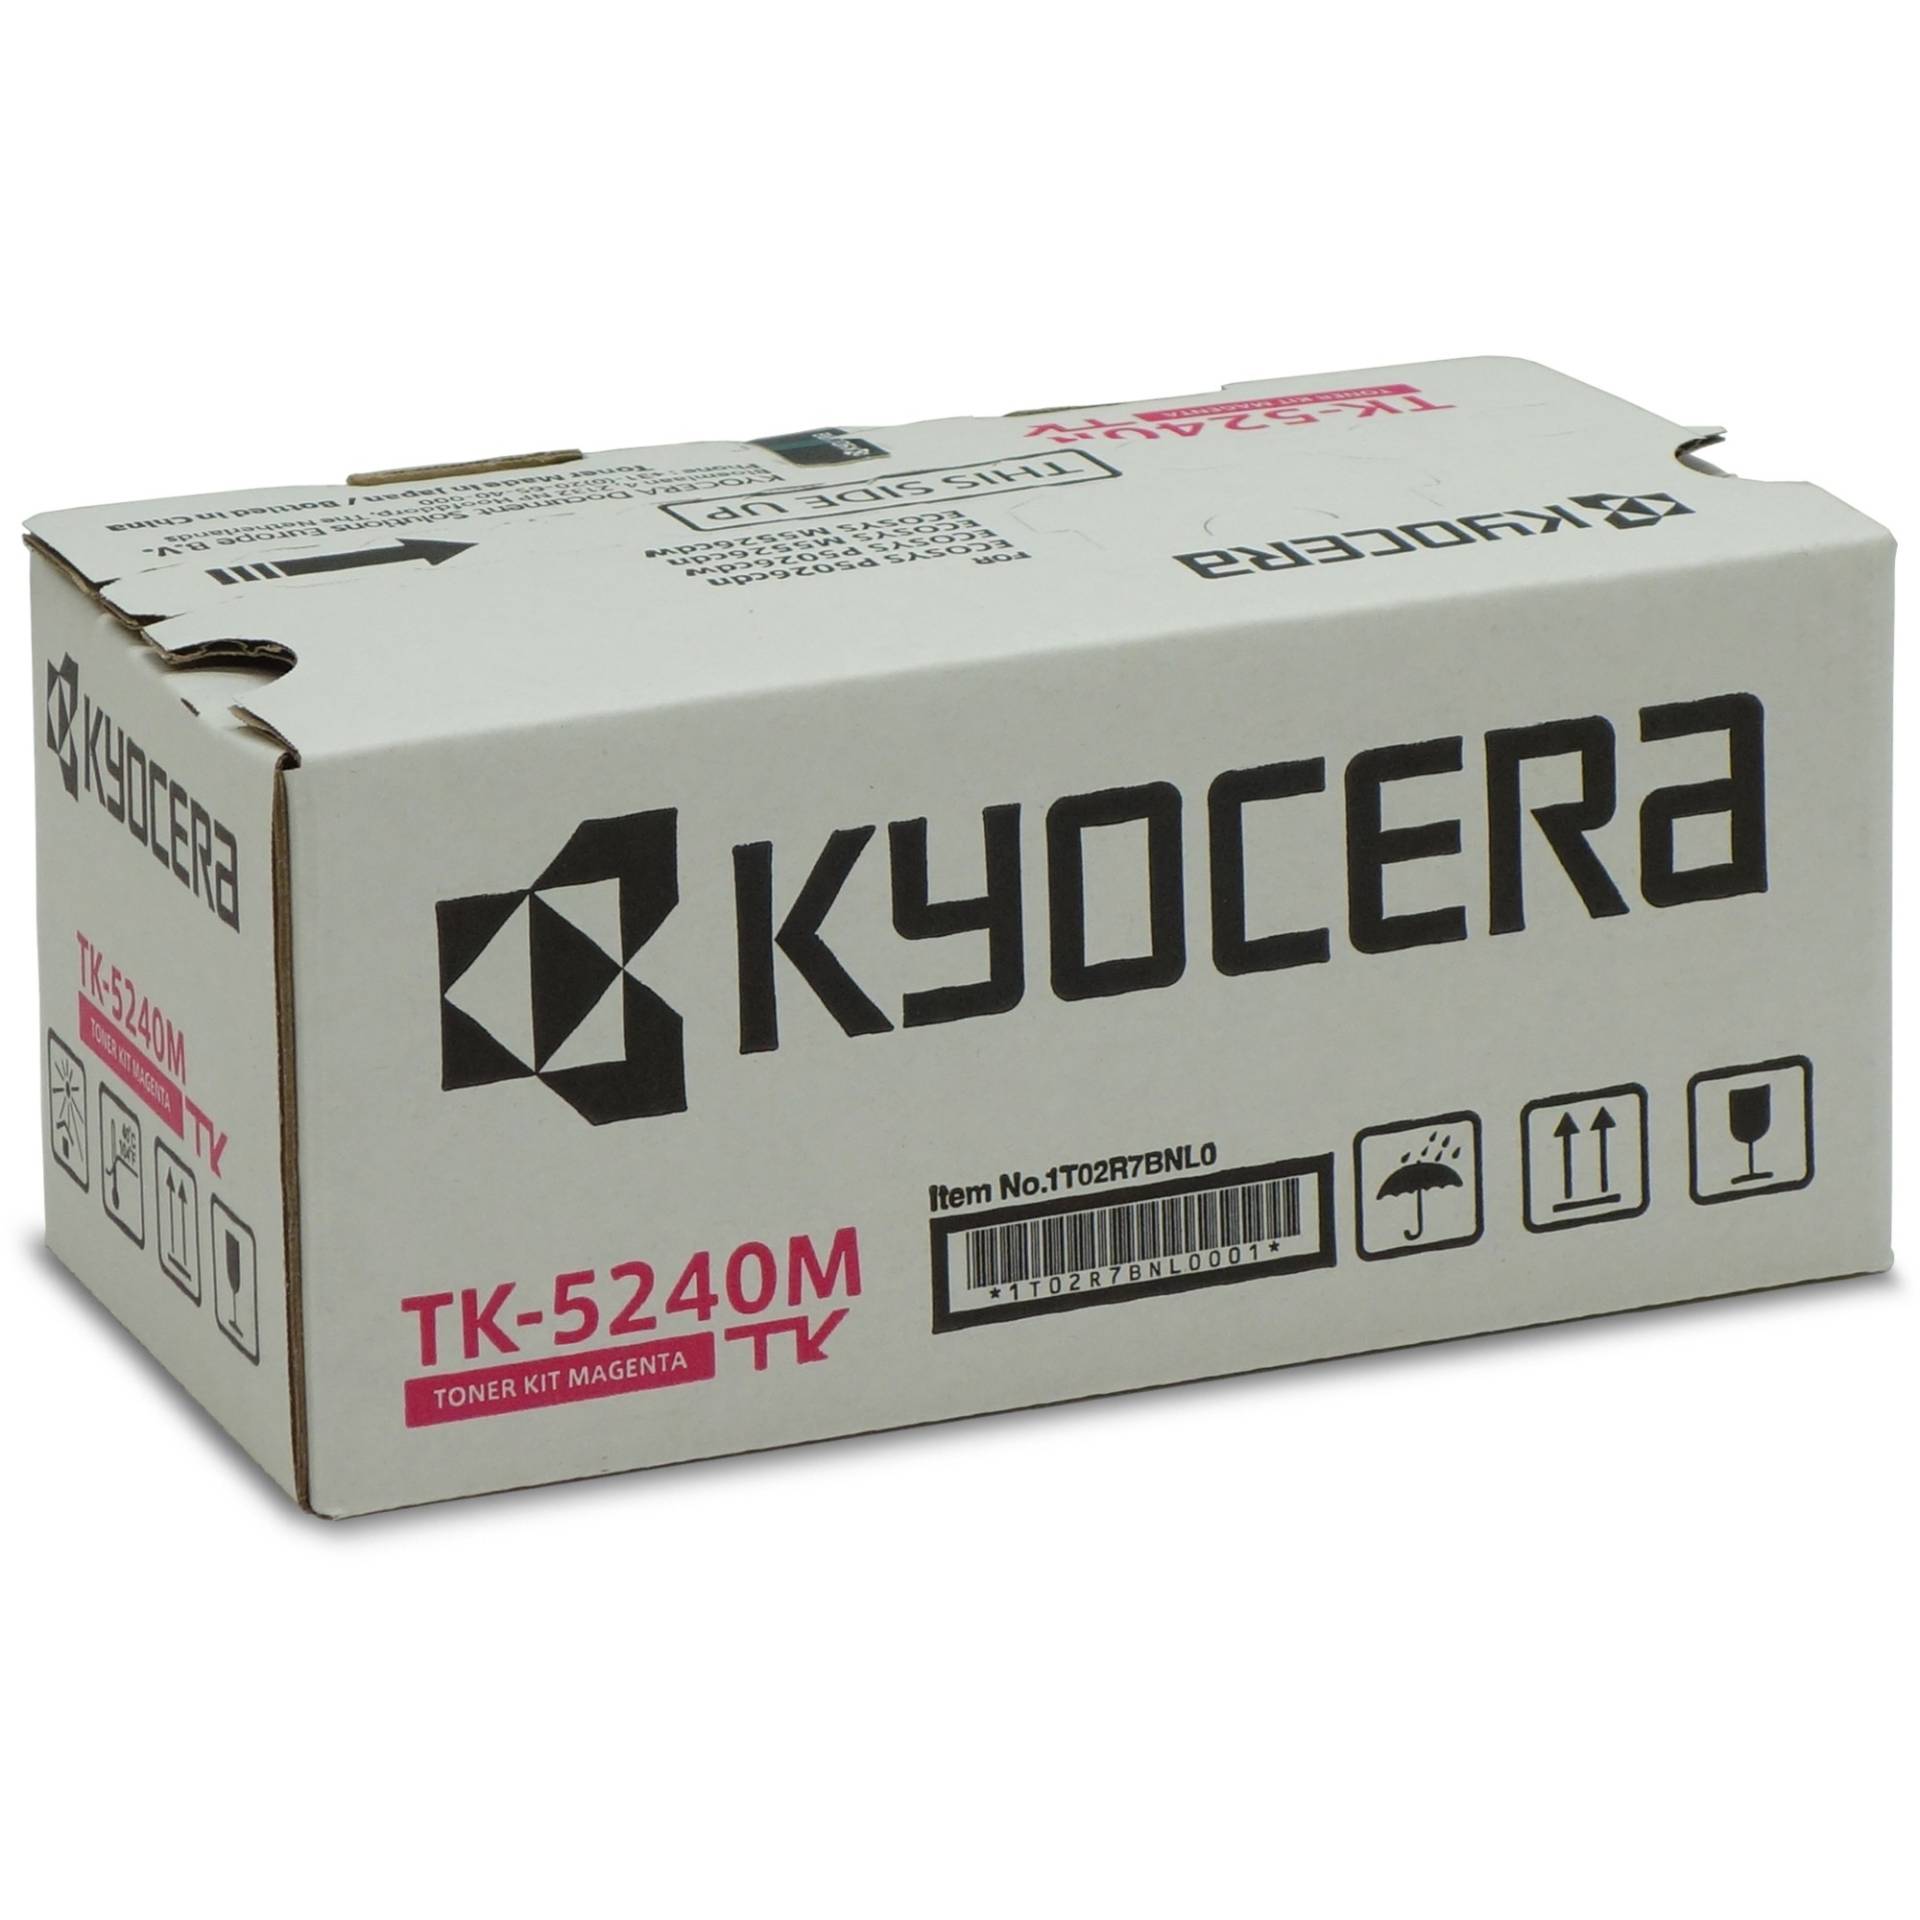 Toner magenta TK-5240M von Kyocera